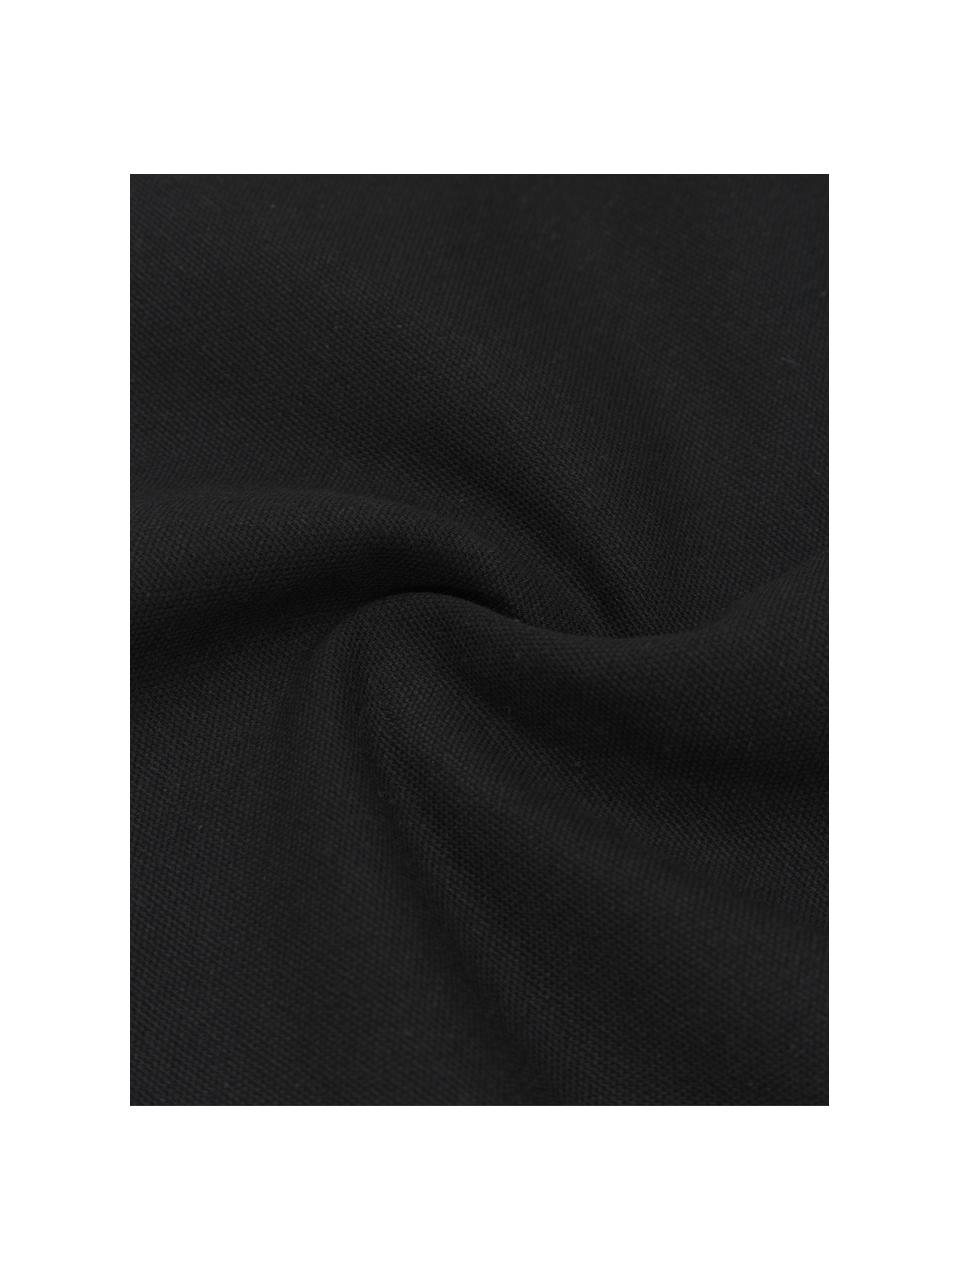 Katoenen kussenhoes Piazza met kwastjes, 100% katoen, Zwart, wit, B 50 x L 50 cm